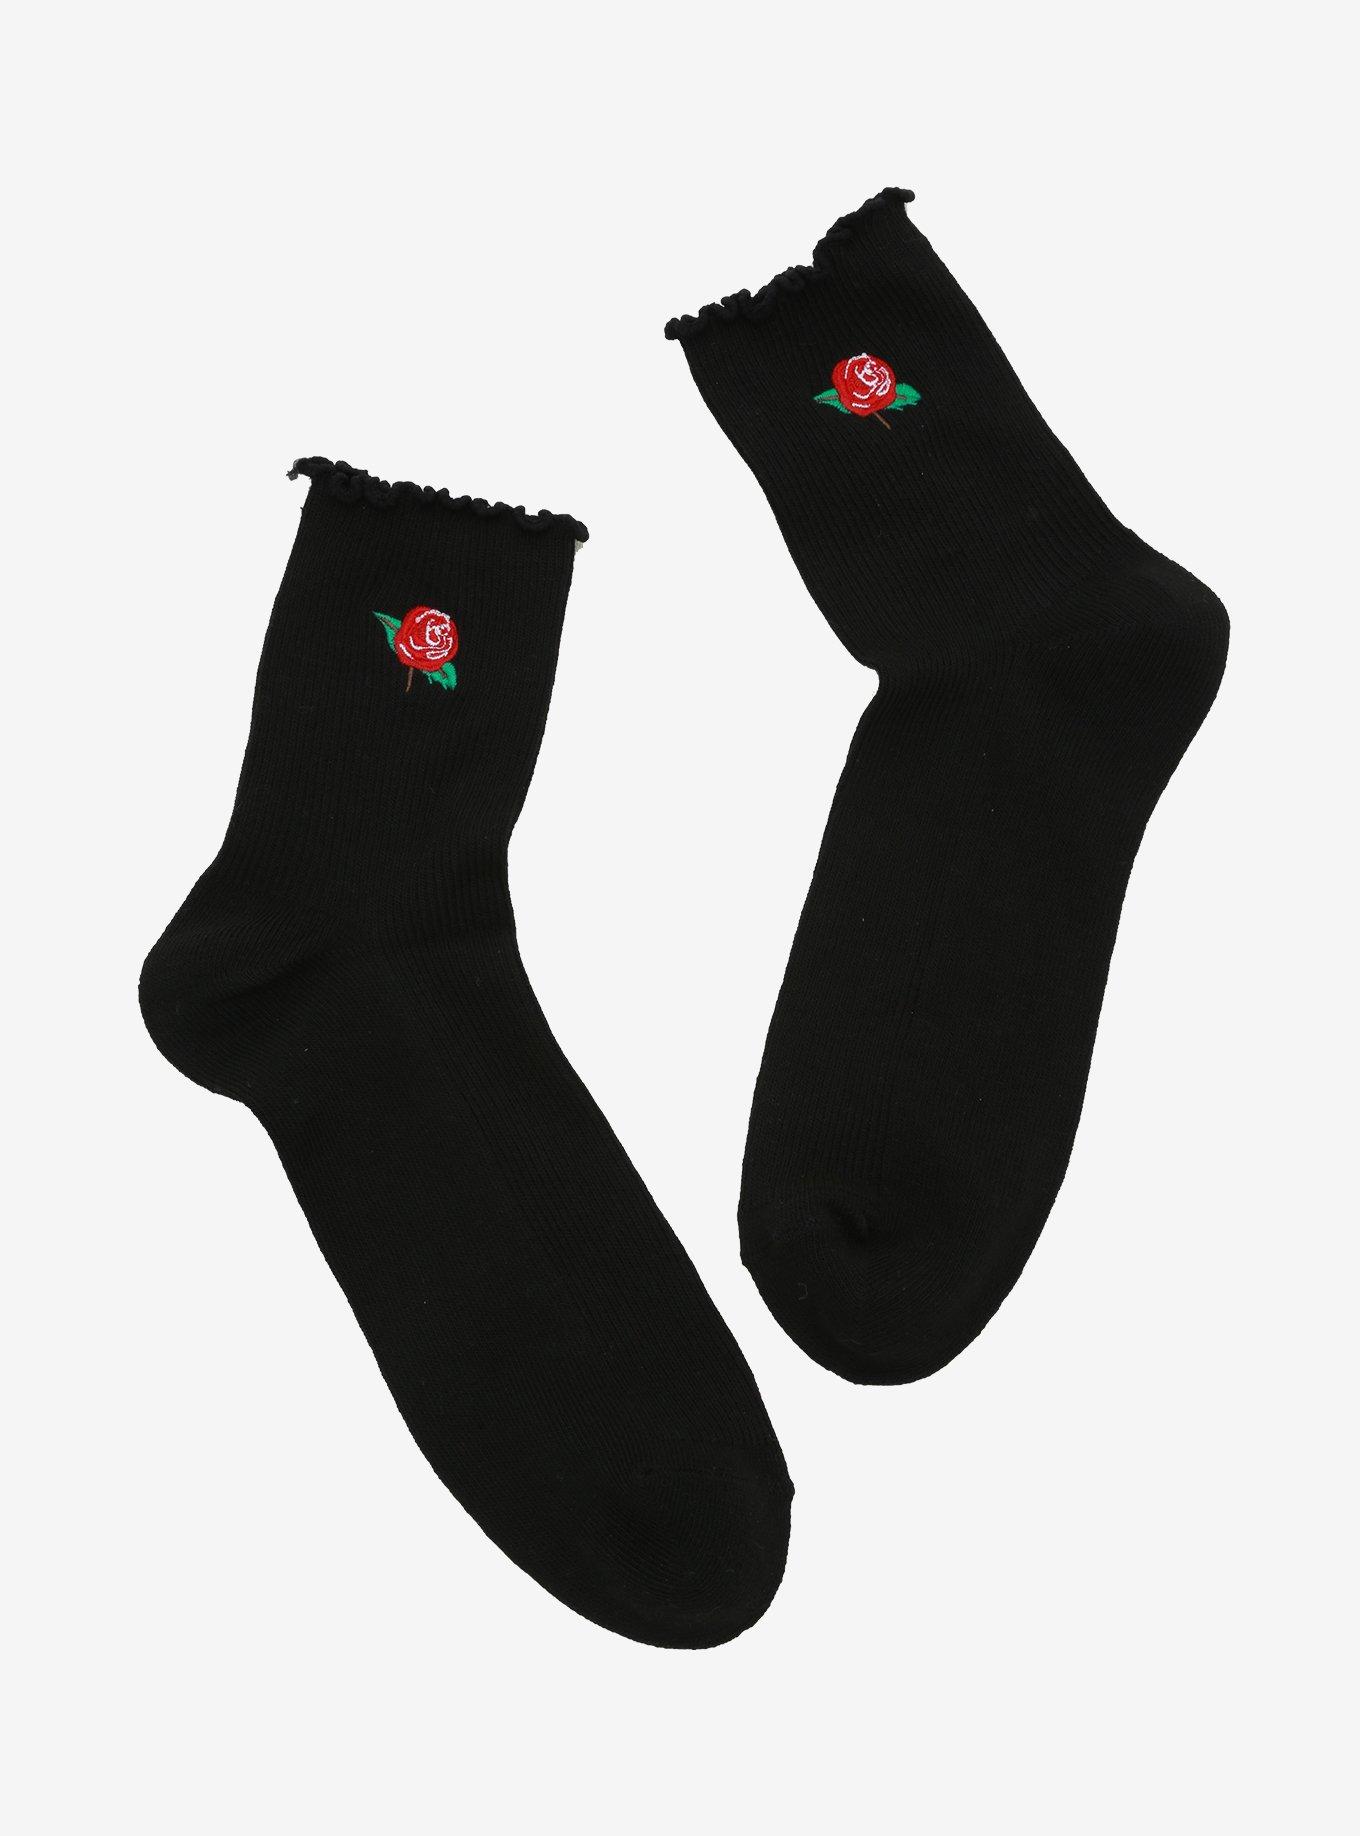 Rose Black Ankle Socks | Hot Topic